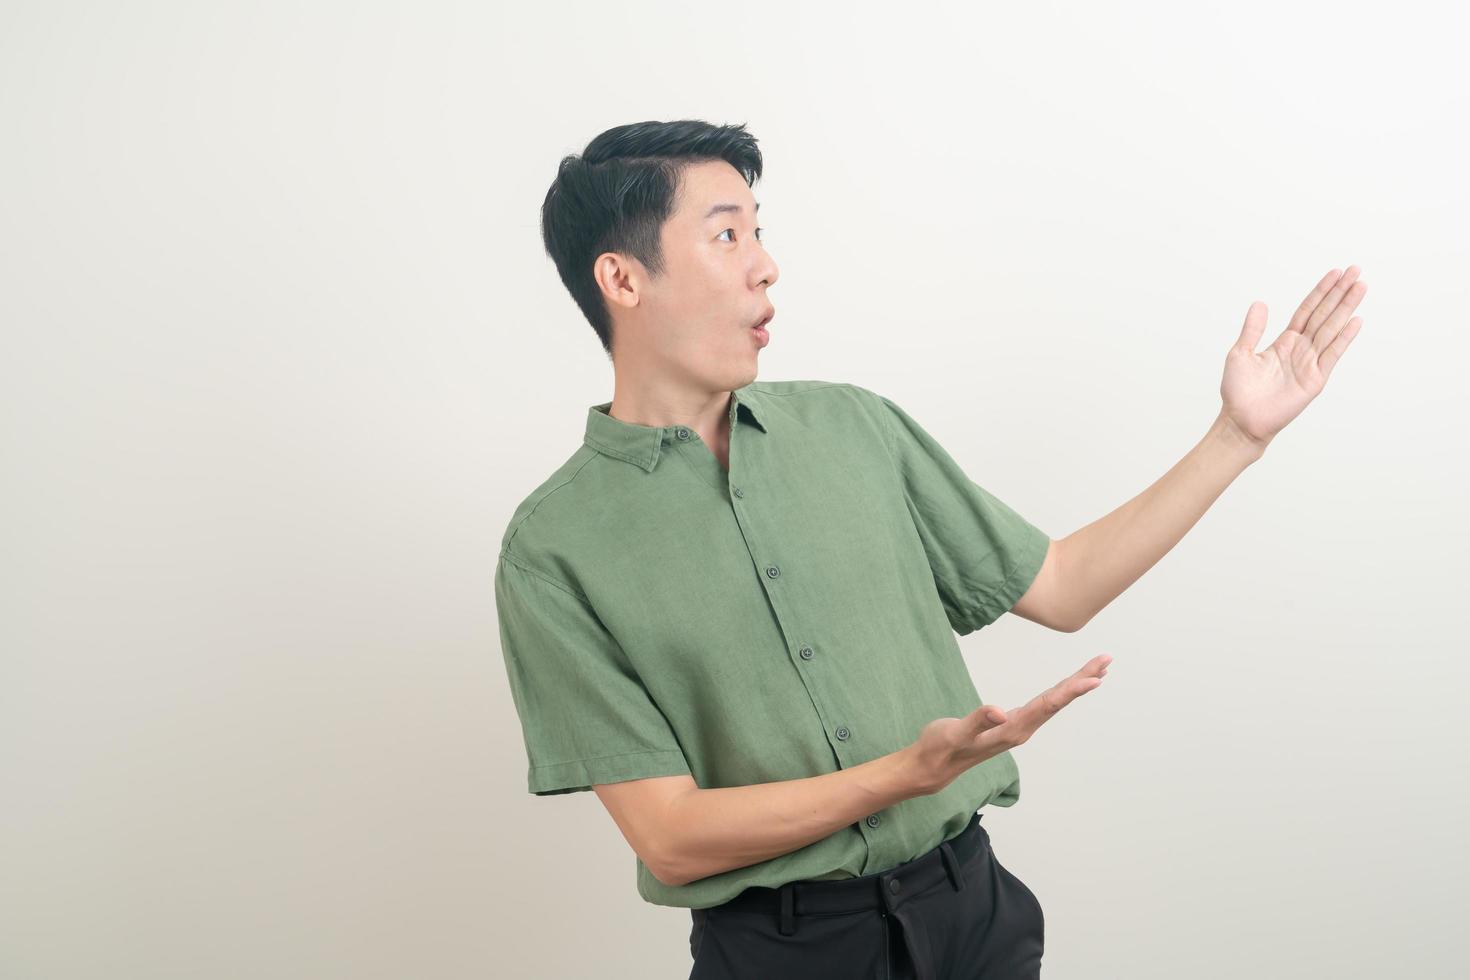 uomo asiatico con la mano che indica o che presenta su sfondo bianco foto